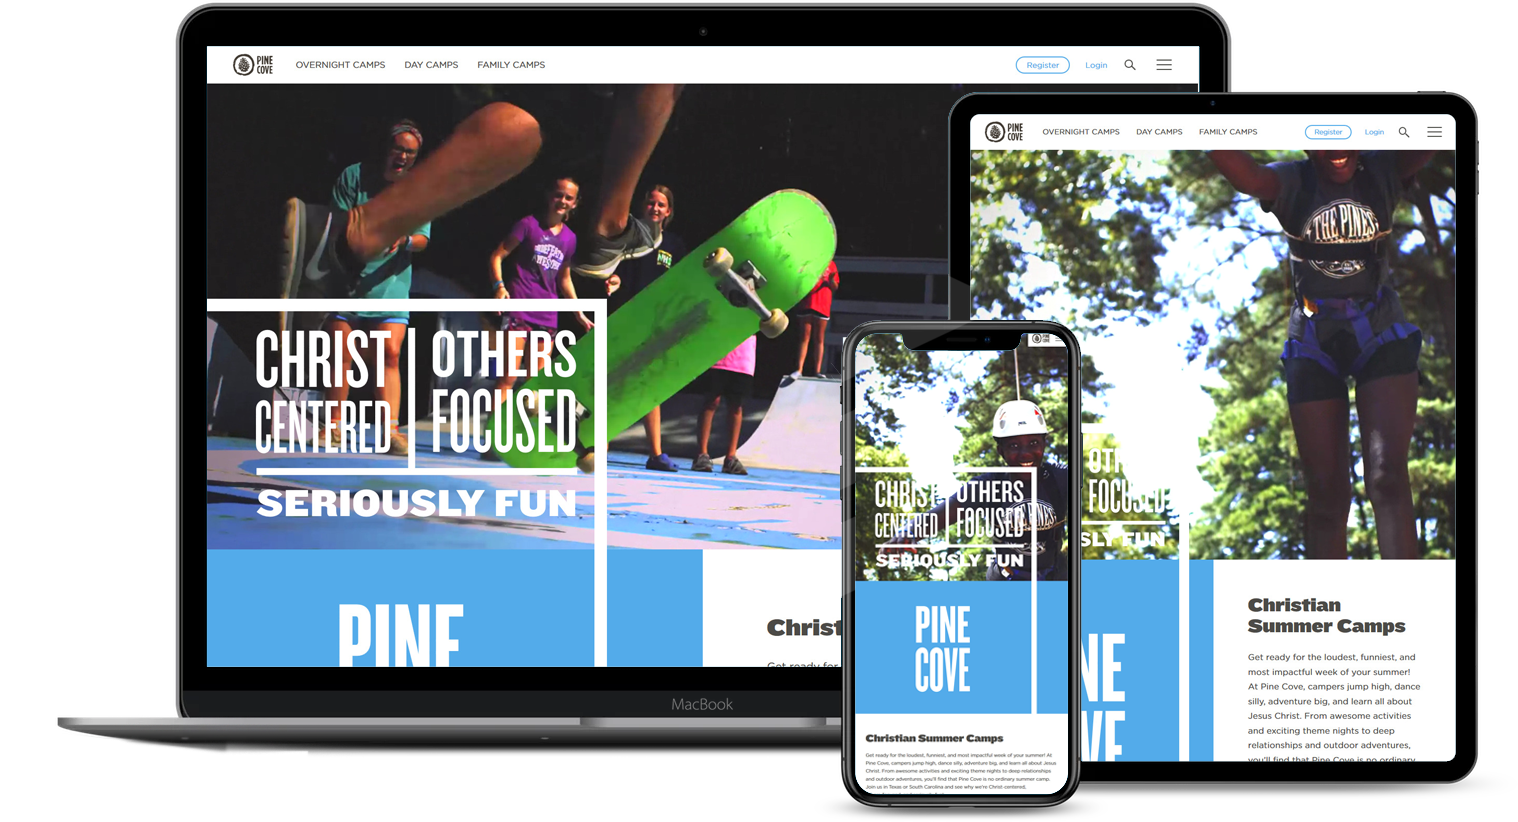 Pine Cove Web Design